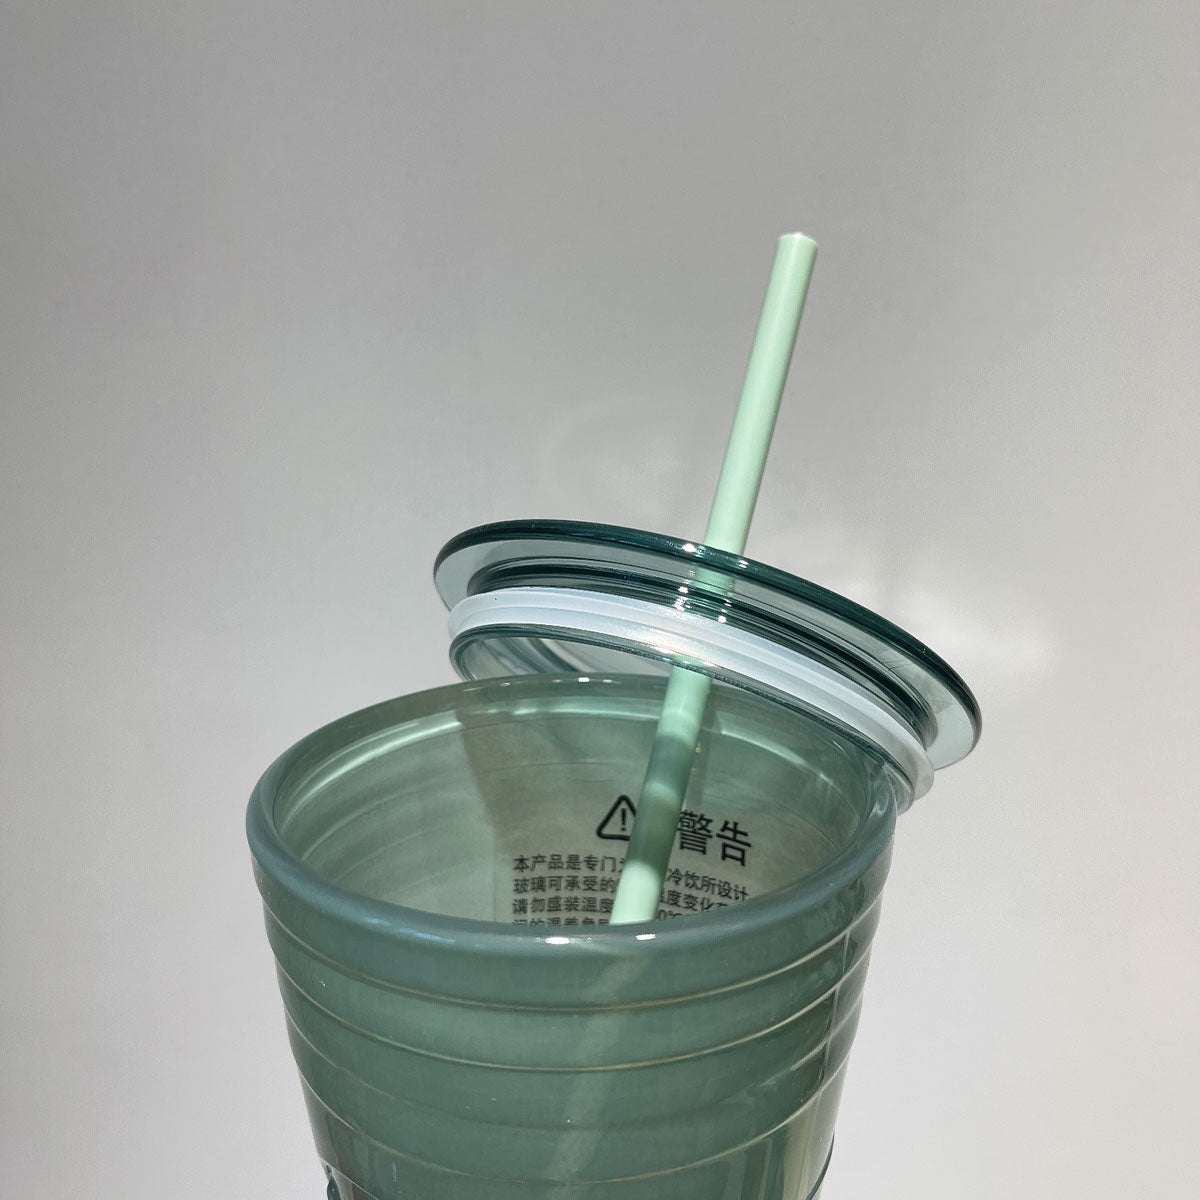 Set of 5 Mini Starbucks Kids Cups with Green Straws - 16oz Mini Cups